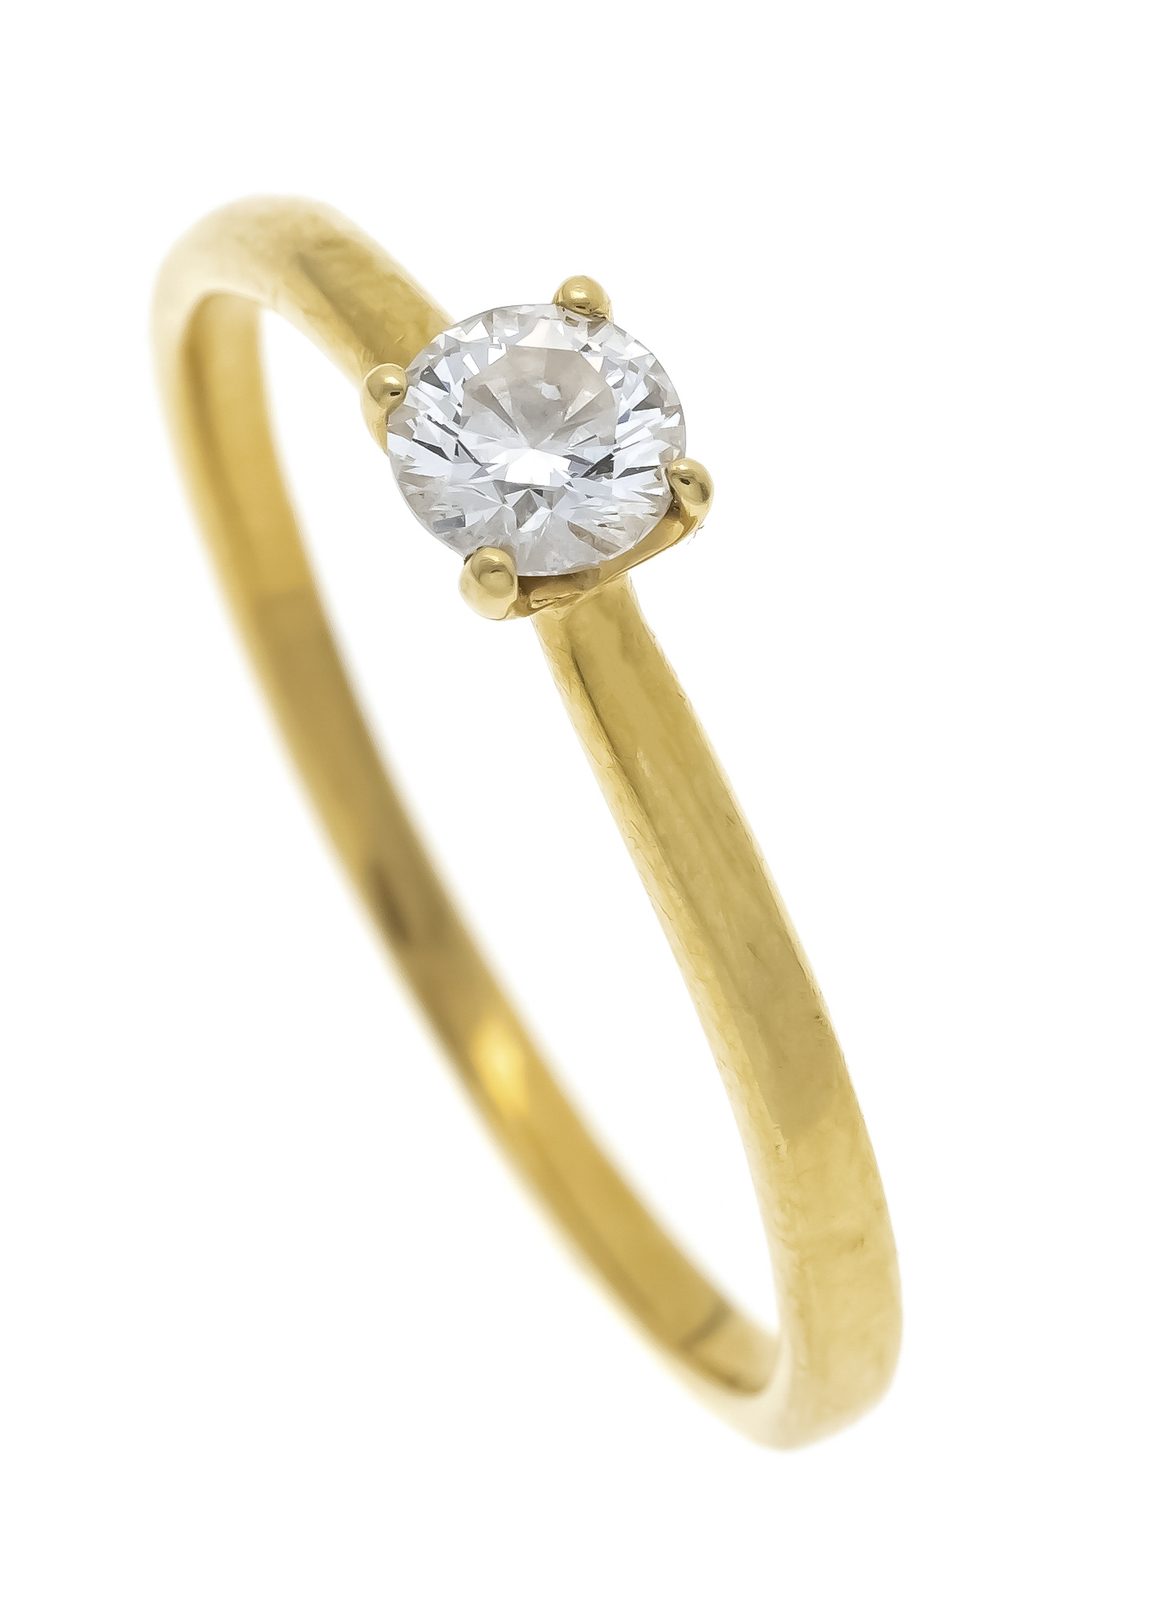 Zlatý prsten se solitérním briliantem, 0,24 ct - 1